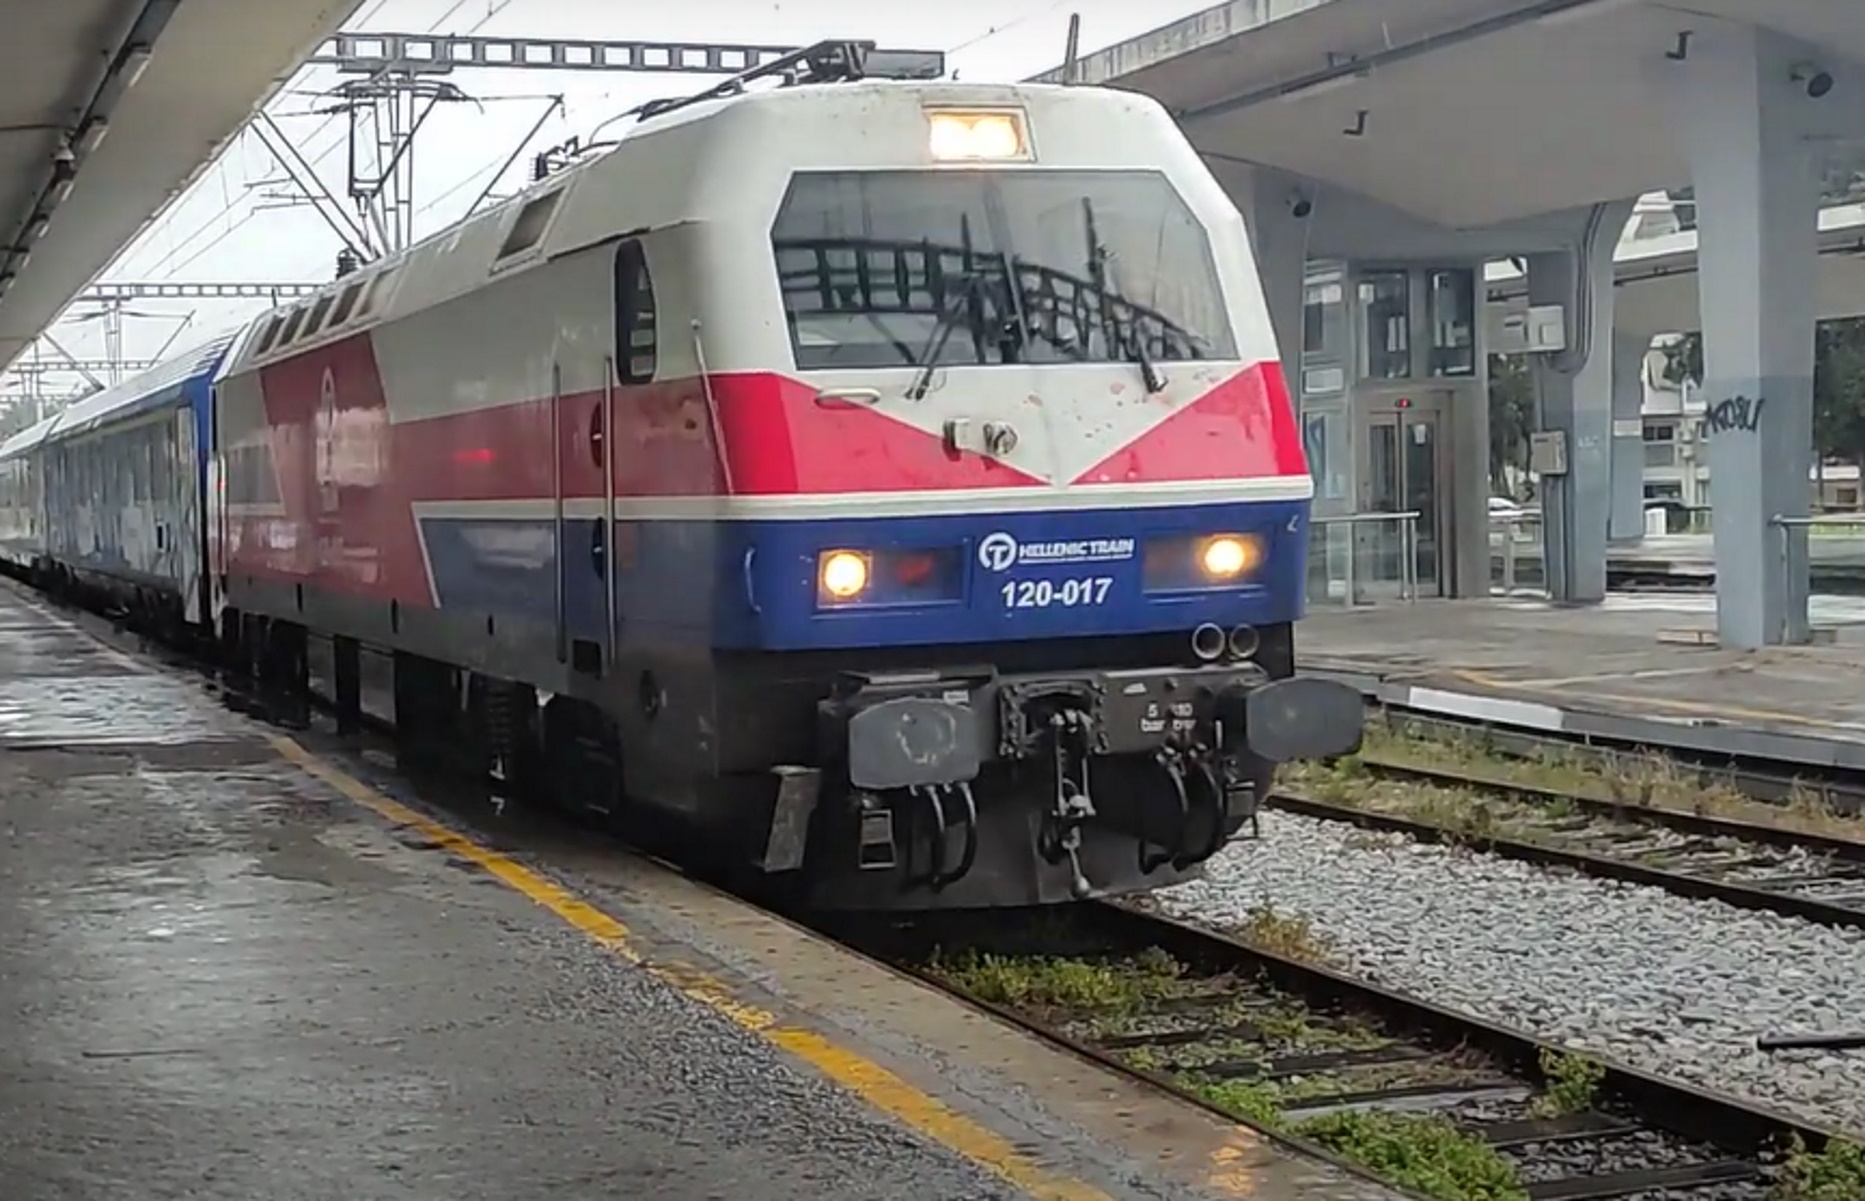 Θεσσαλονίκη: Έφτασε η επιβατική αμαξοστοιχία από Αθήνα – Συγκινημένοι επιβάτες και σιδηροδρομικοί